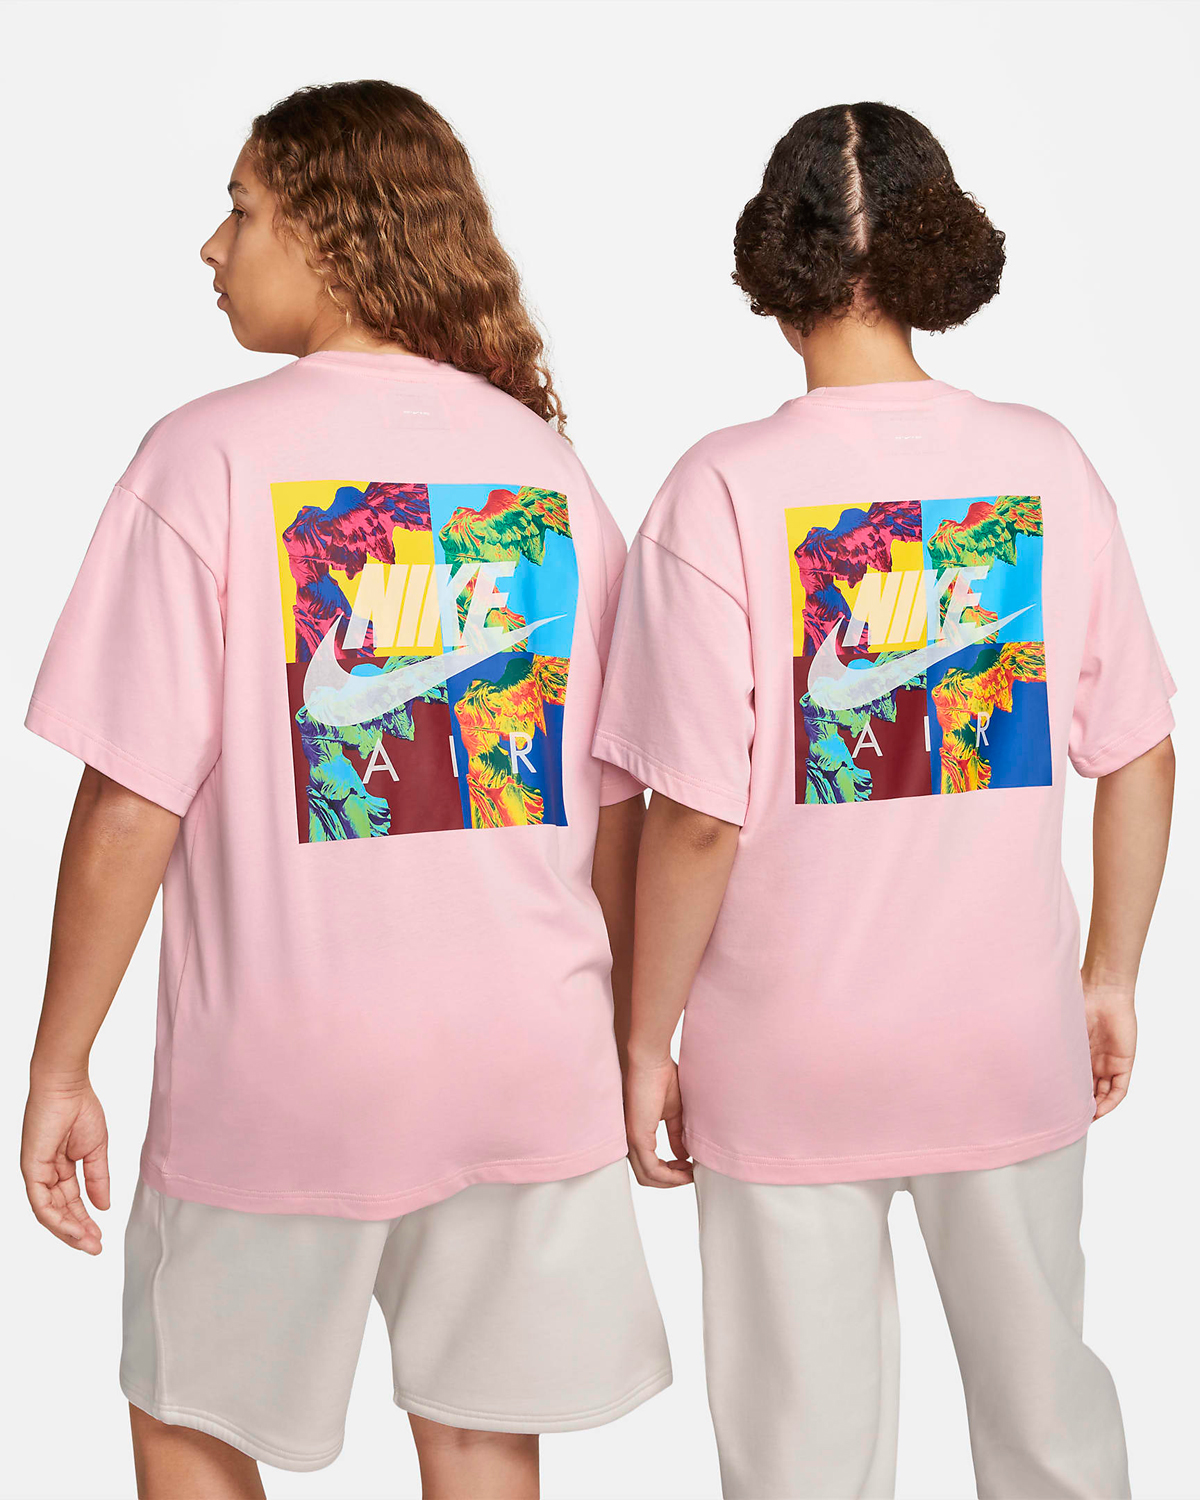 Nike-Air-Goddess-T-Shirt-Medium-Soft-Pink-2